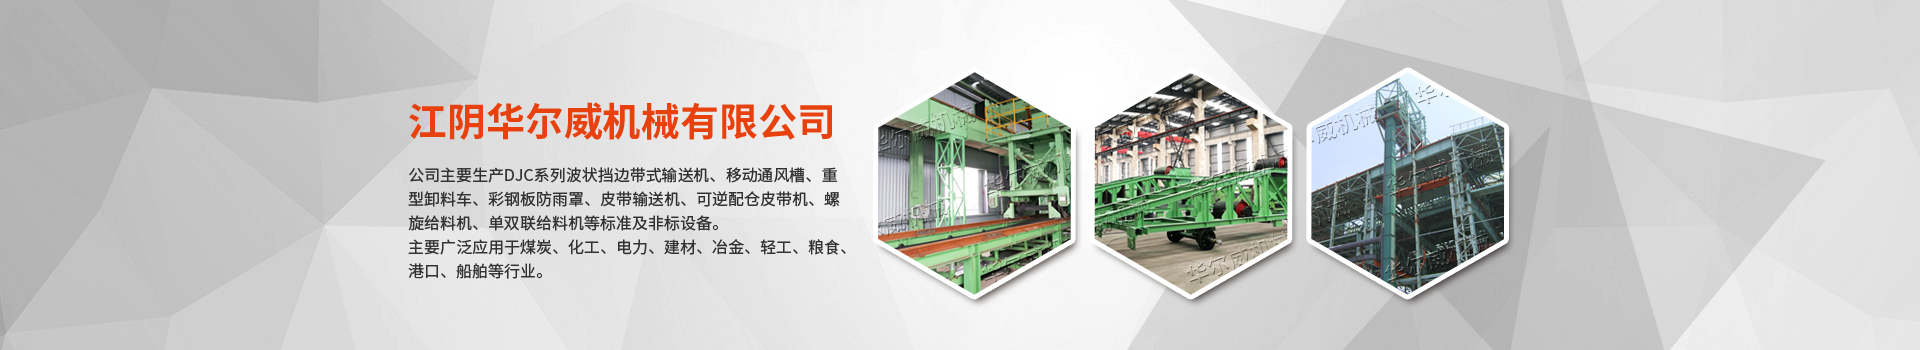 深槽皮带机在操作中需要注意的事项-卸料车行走轮 -江阴华尔威机械有限公司